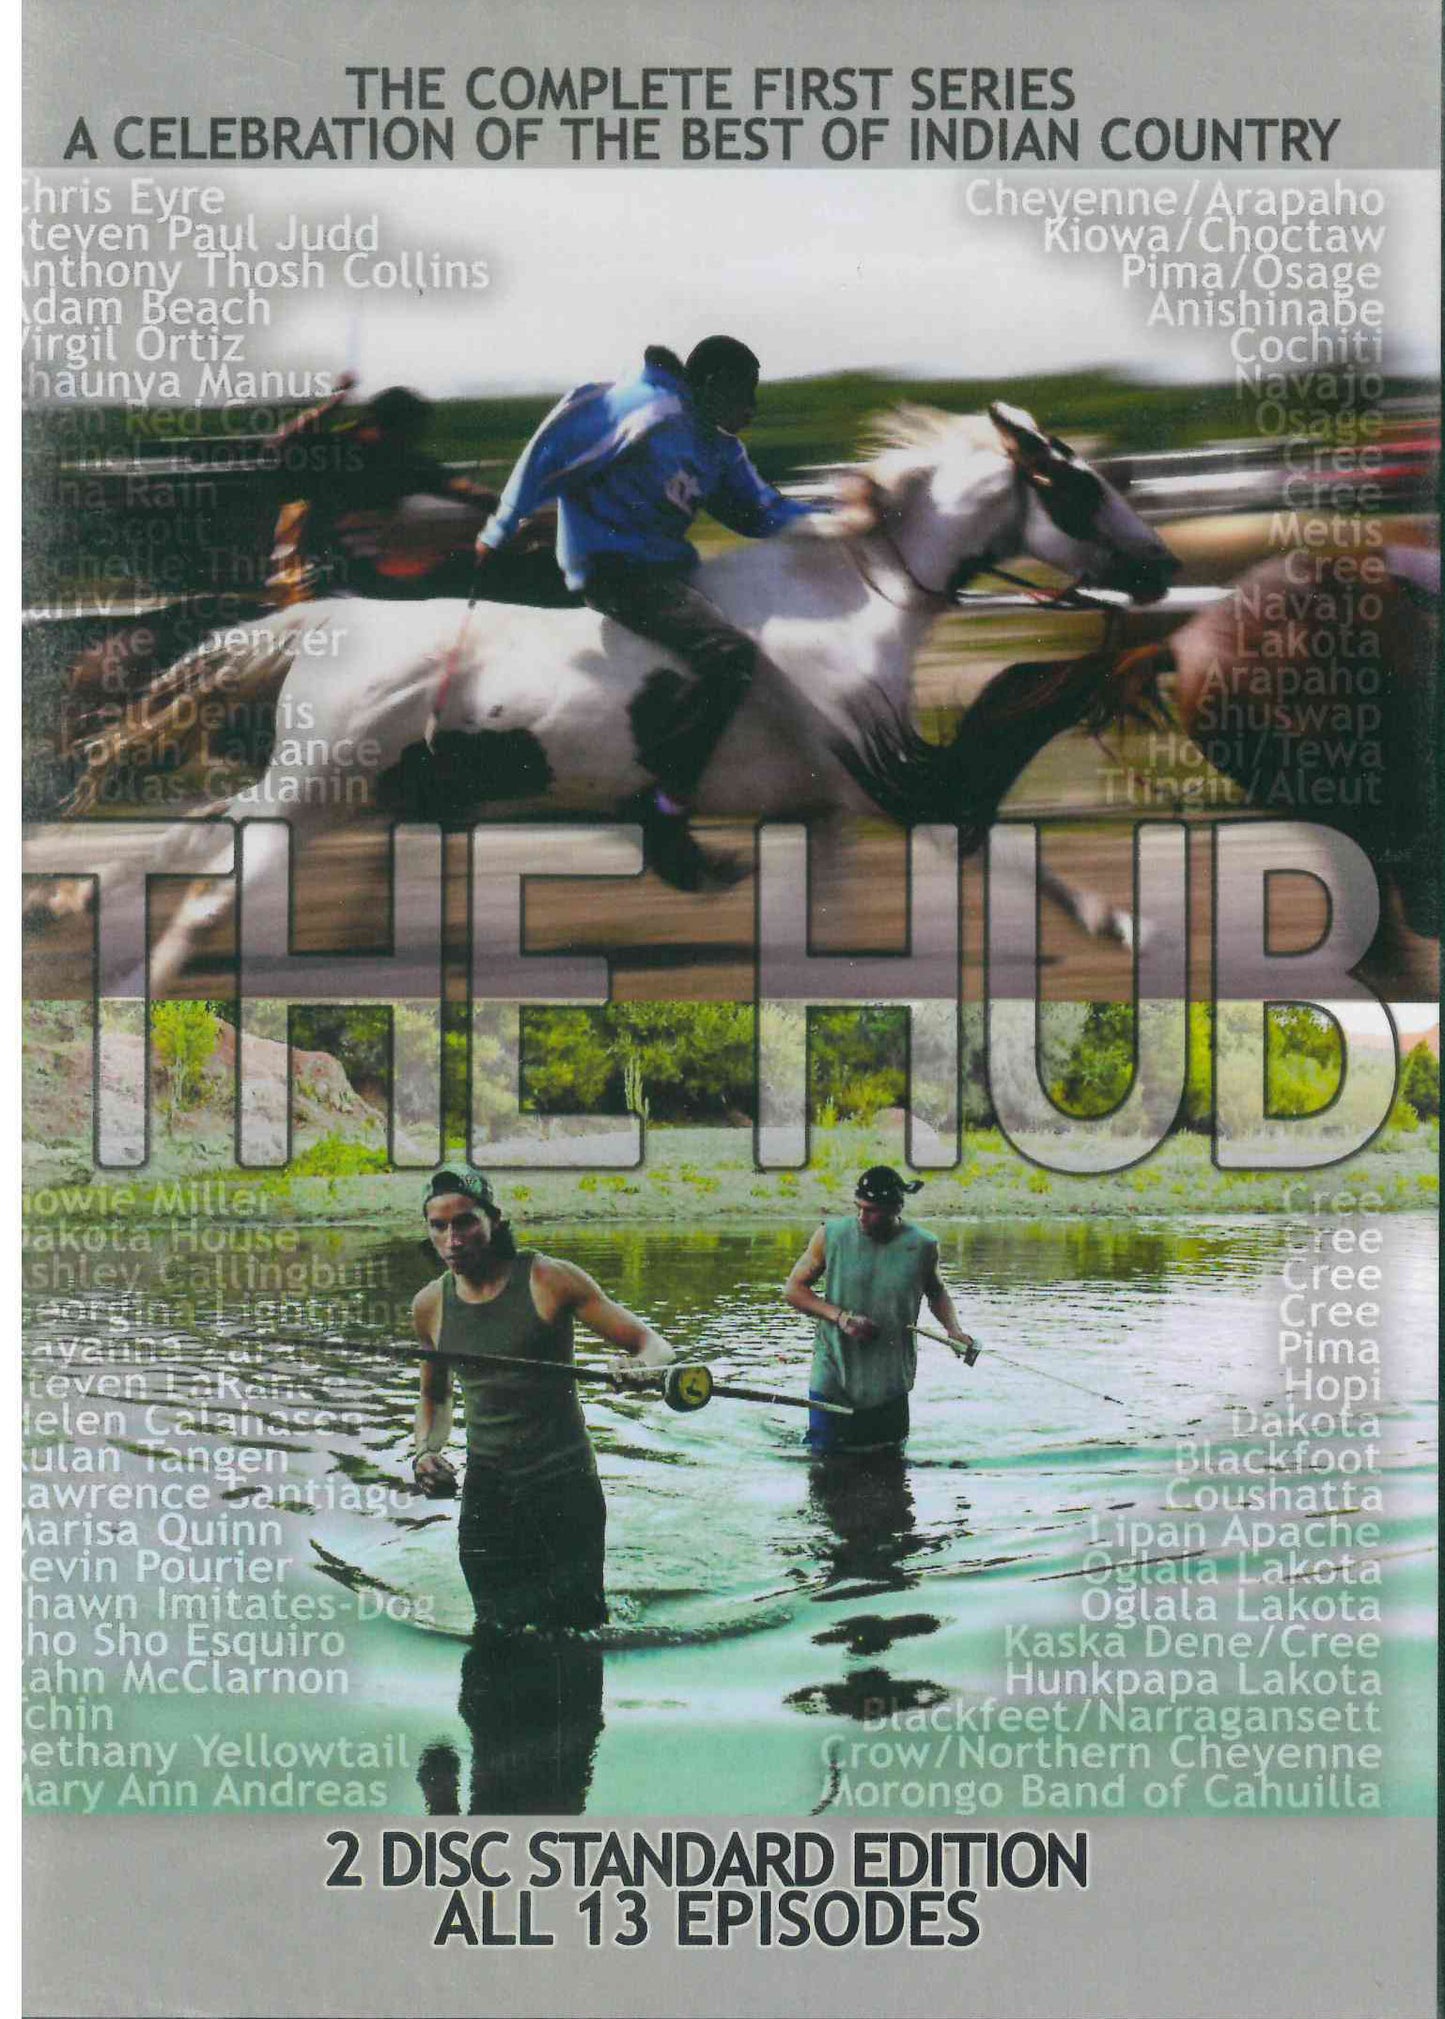 The Hub DVD